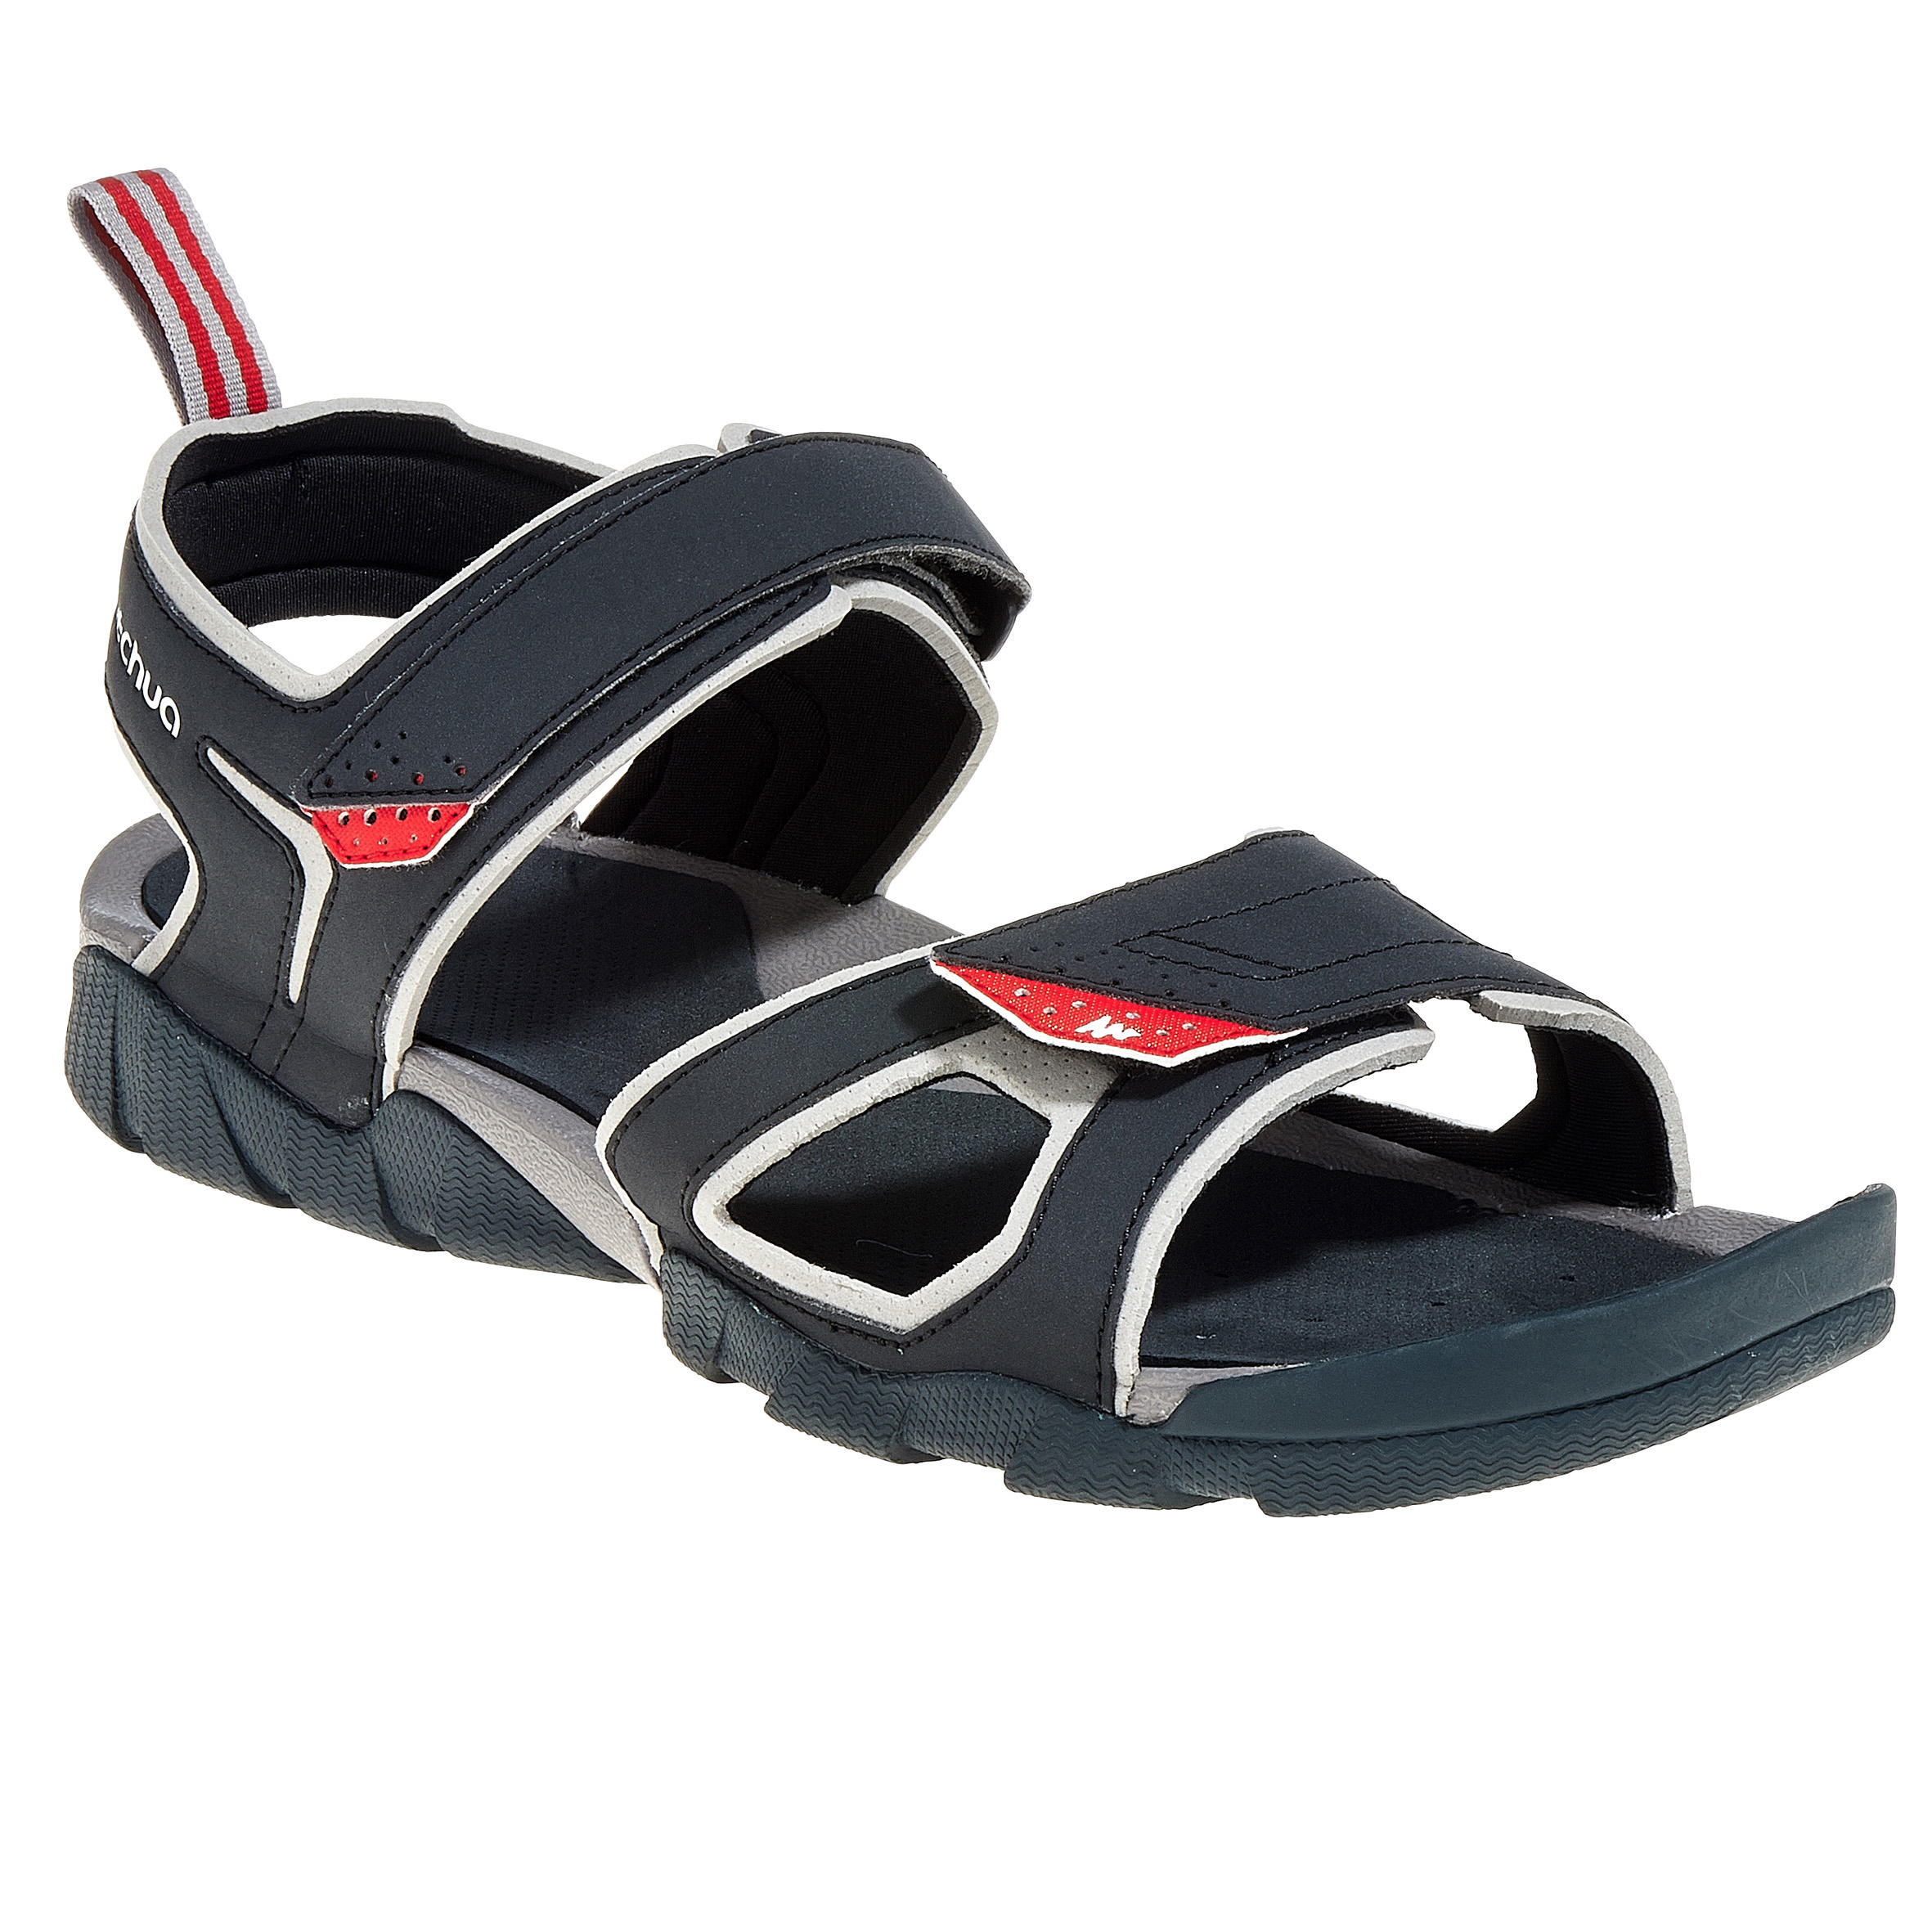 quechua sandals